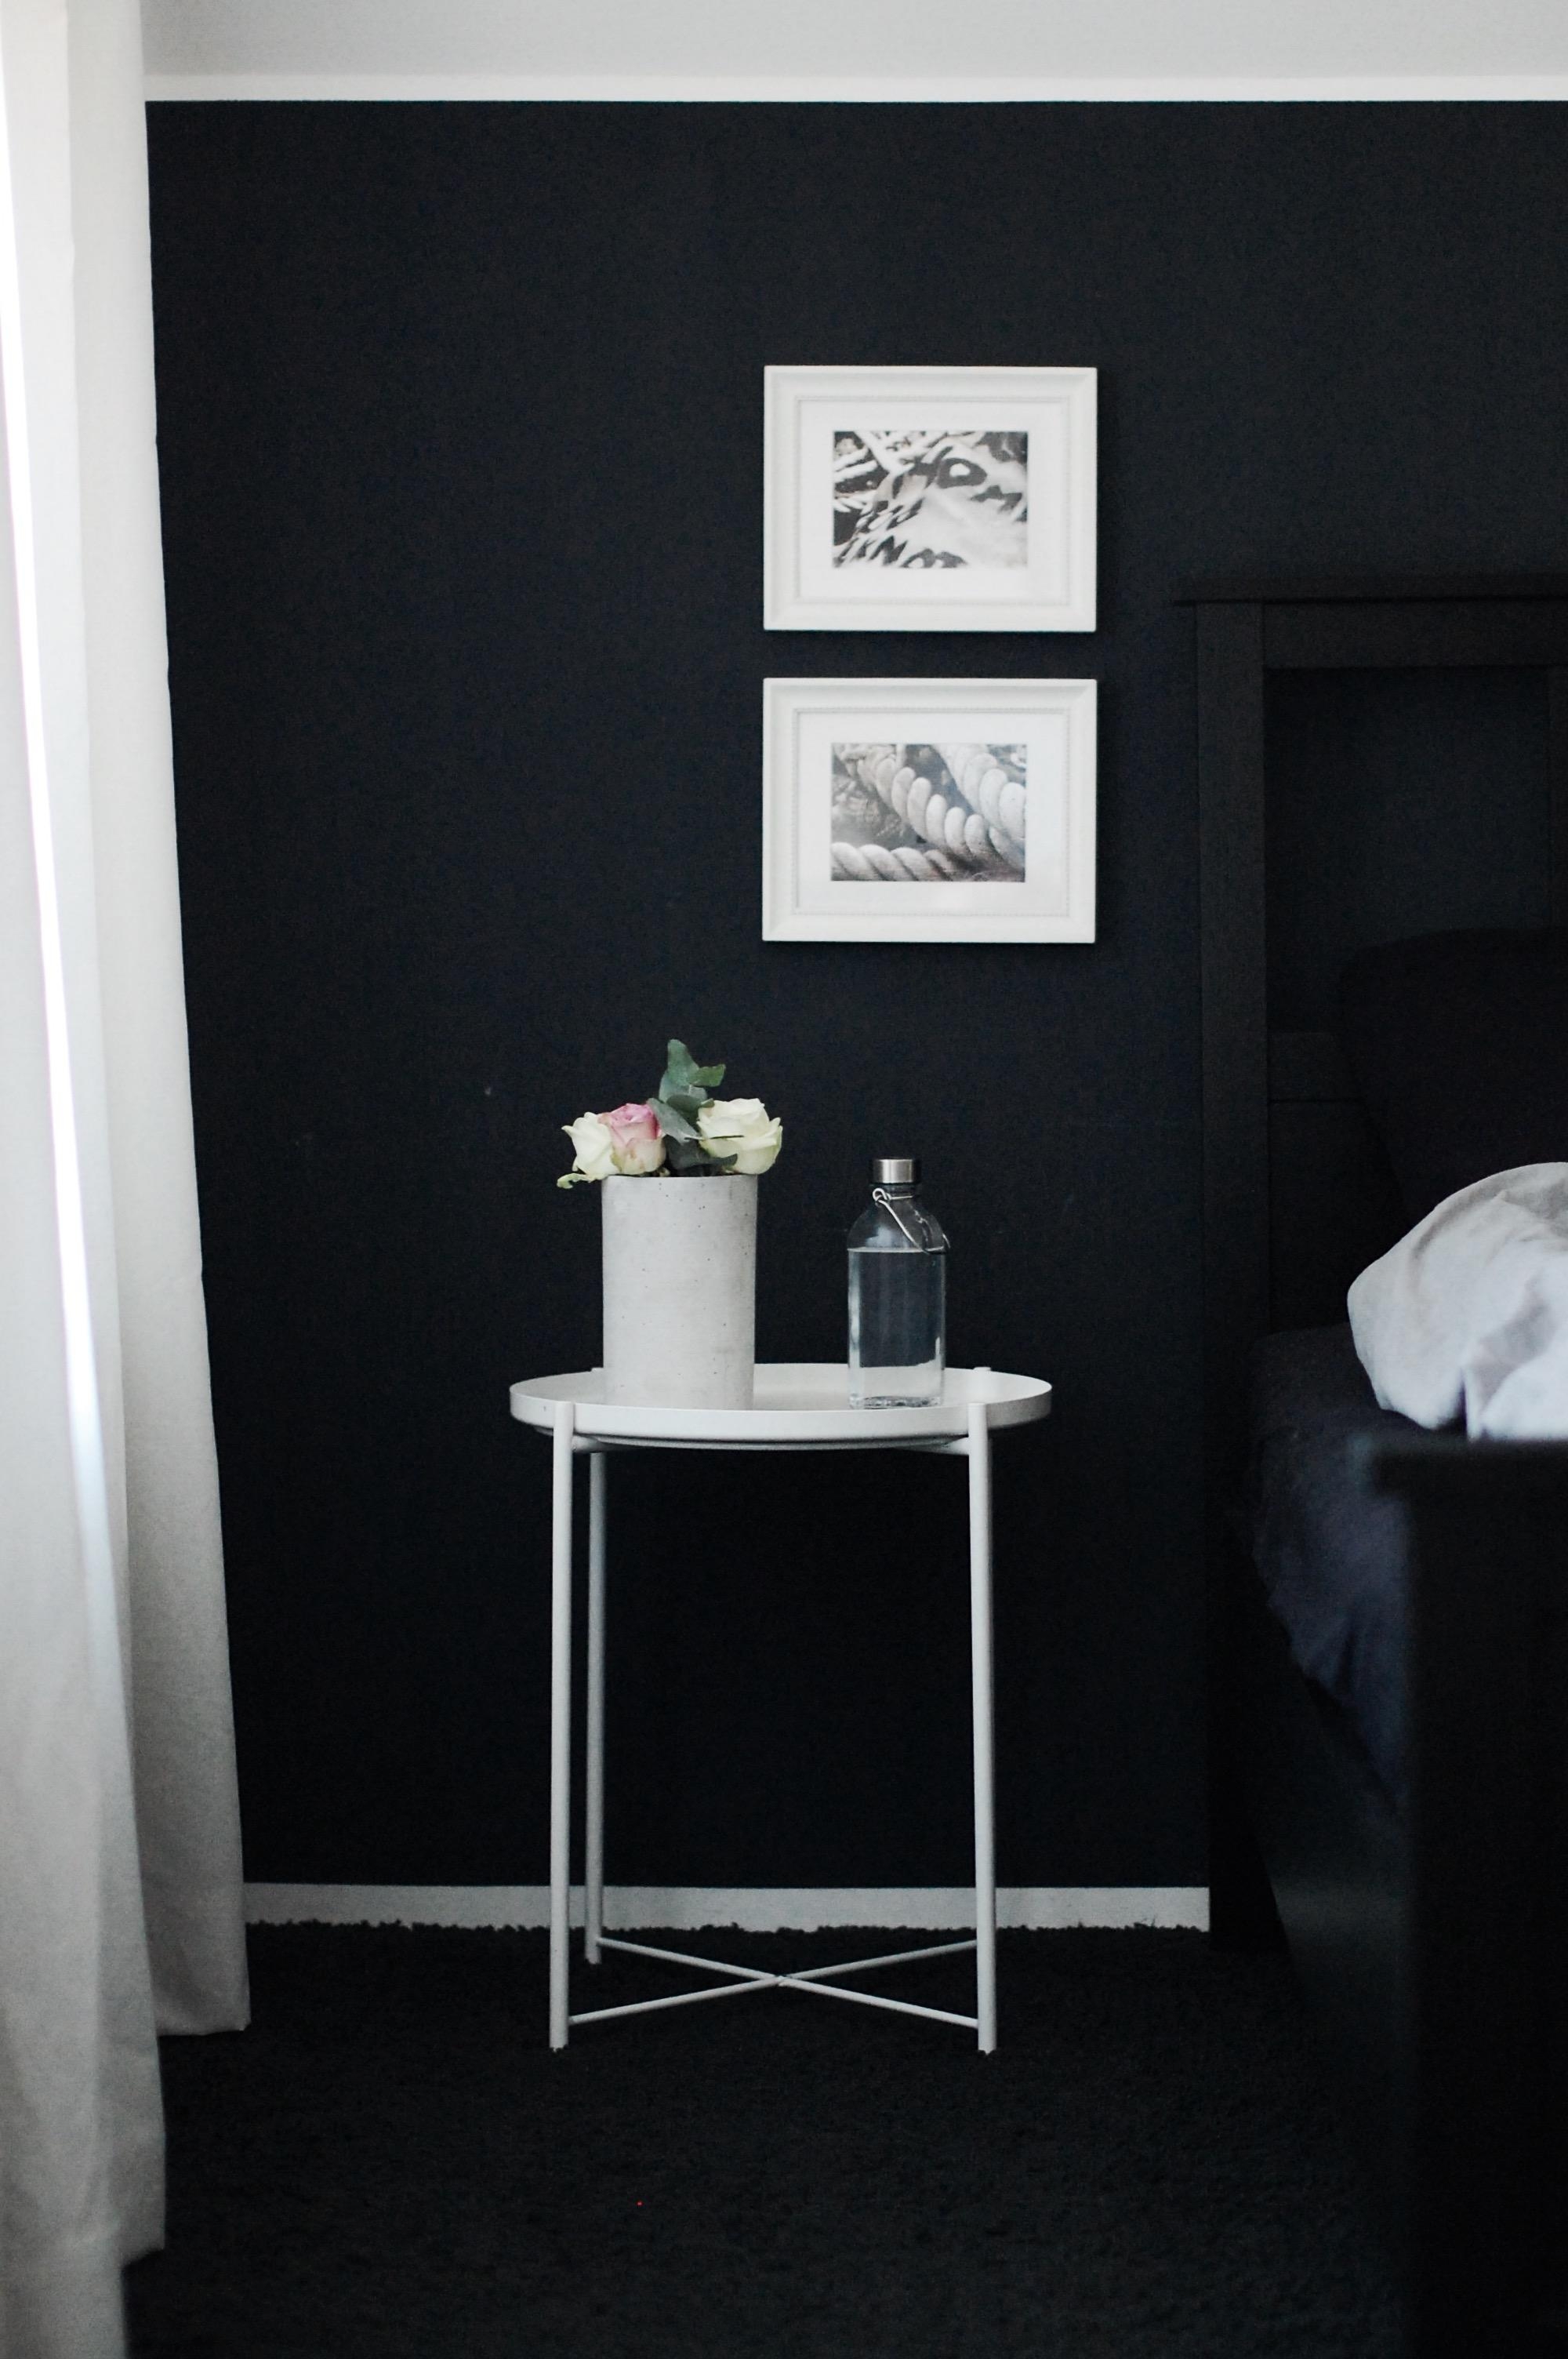 Frische #blumen im #schlafzimmer #bedroom#blackwall#minimal#interior#flowers